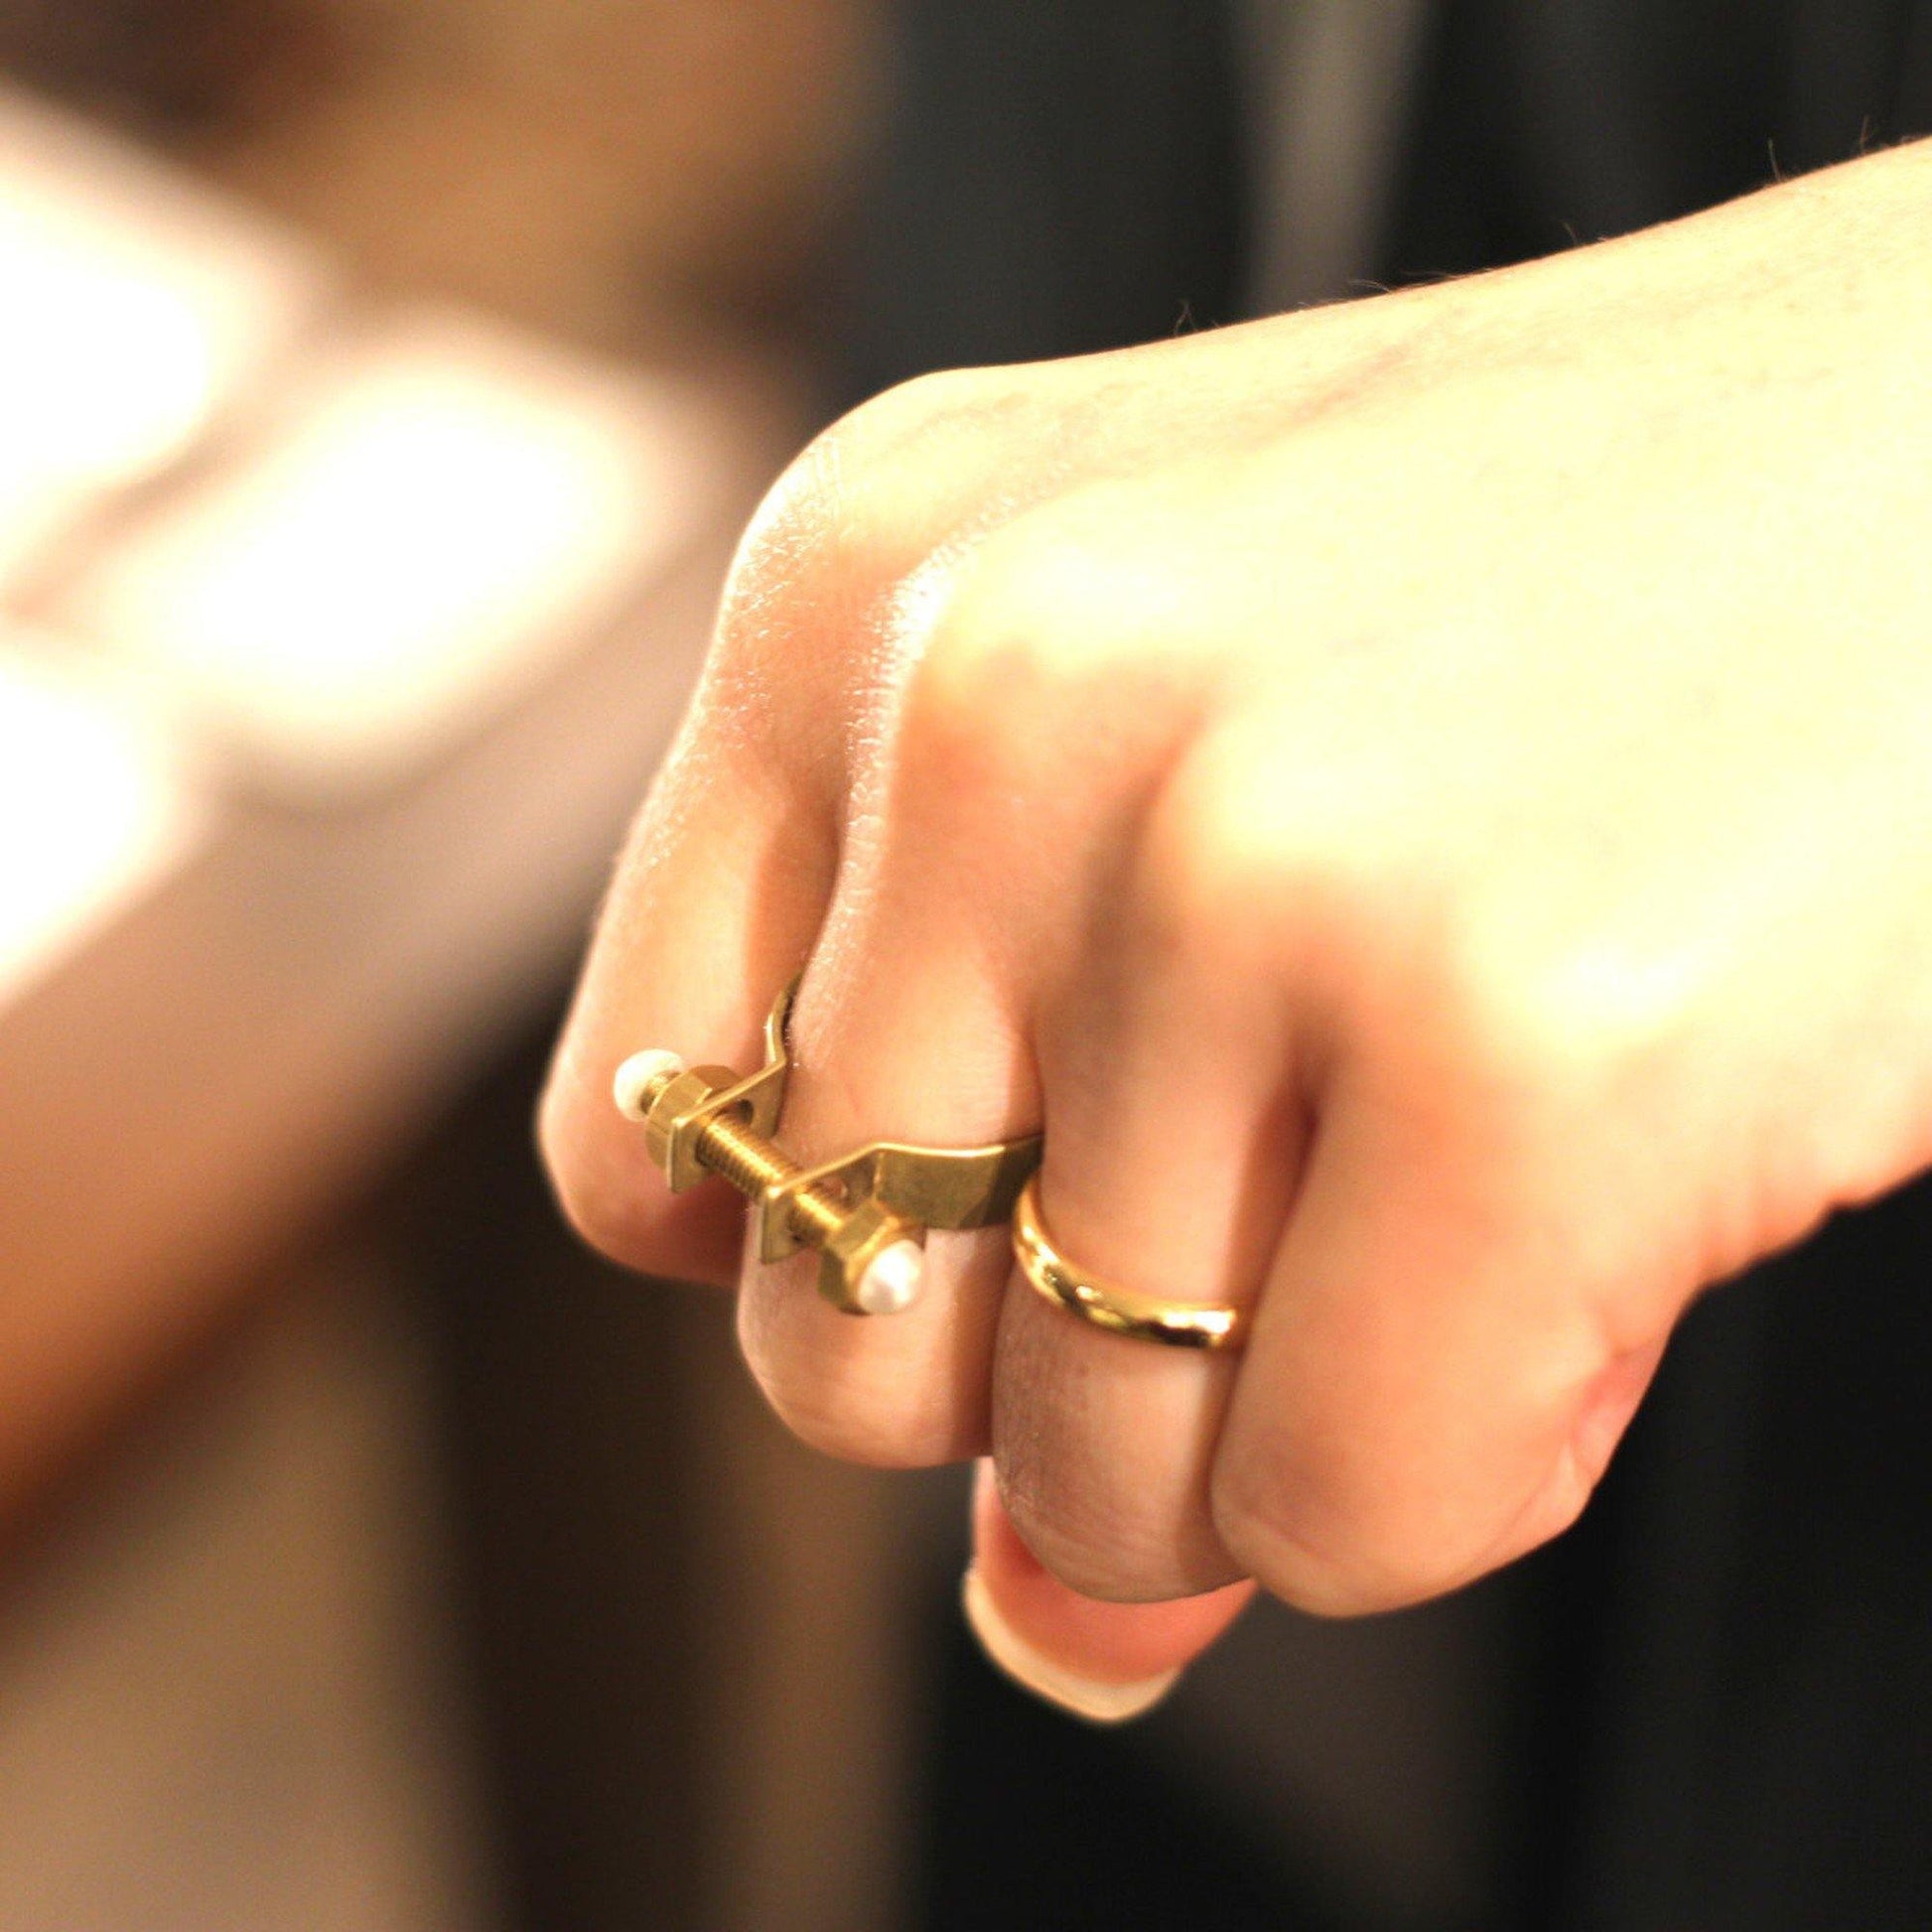 Aquvii(アクビ) | フランケンシュタインをモチーフにしたボルトデザインのリング(指輪) Franken ring [aq.064] - Sopwith camel